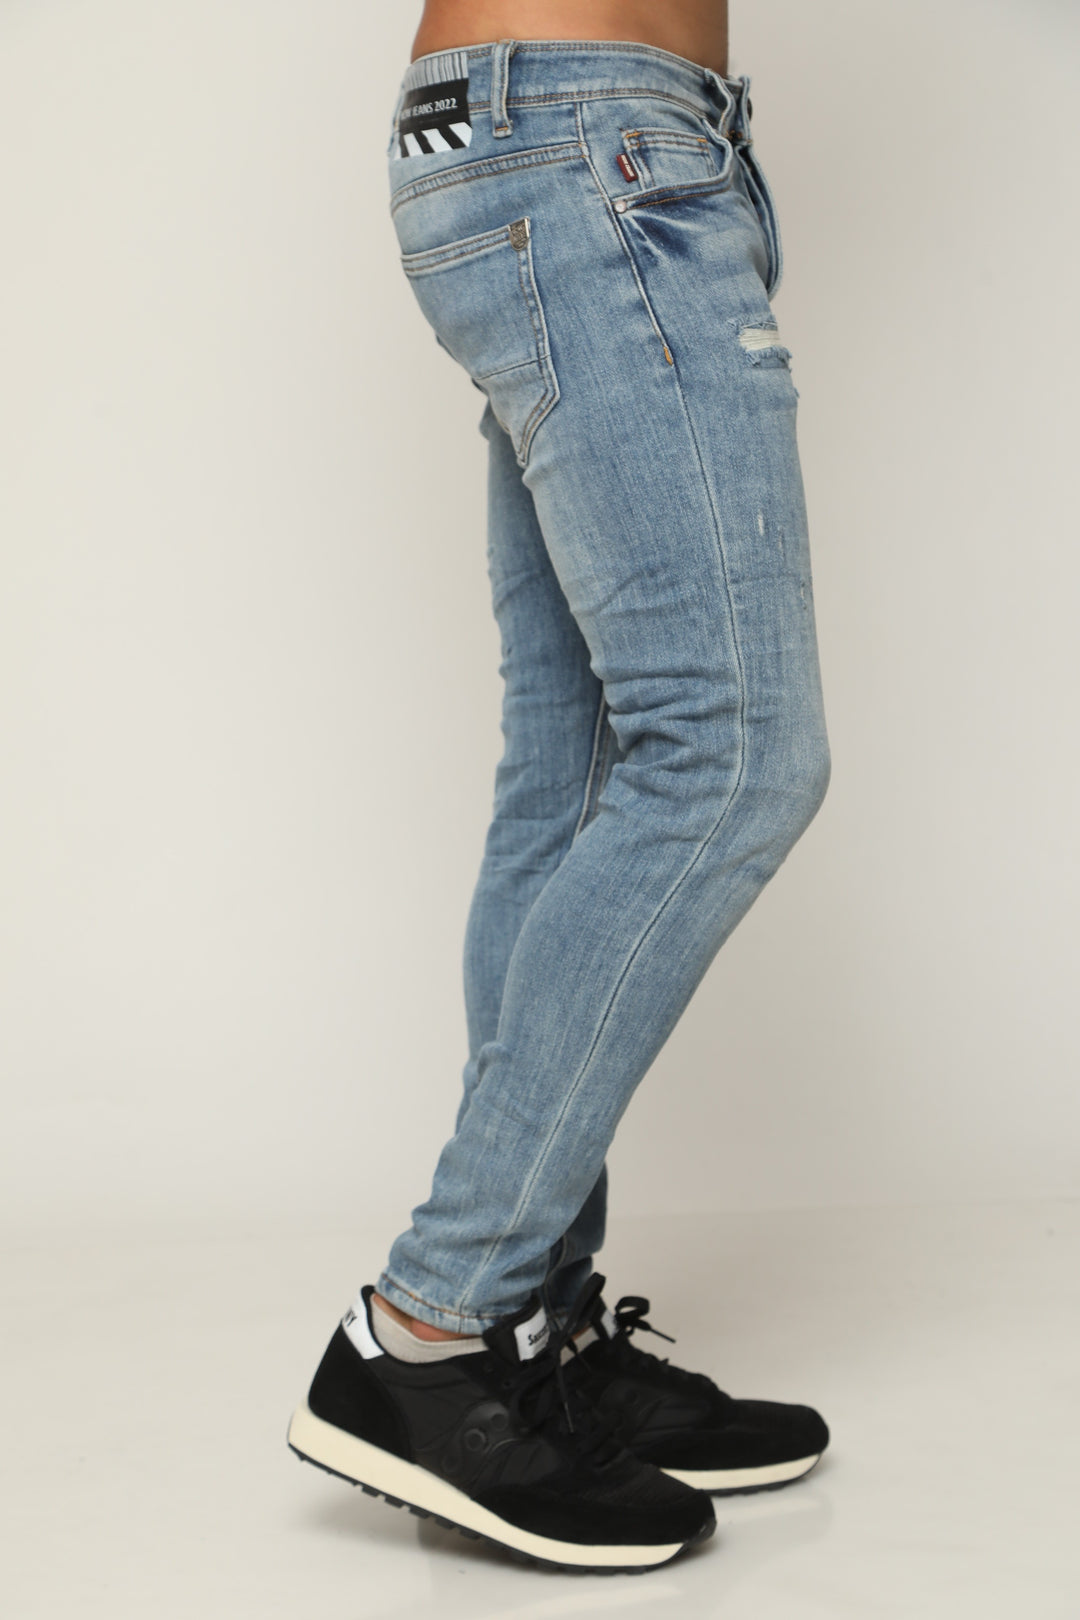 ג'ינס סופר סקיני 840 - canavaro jeans